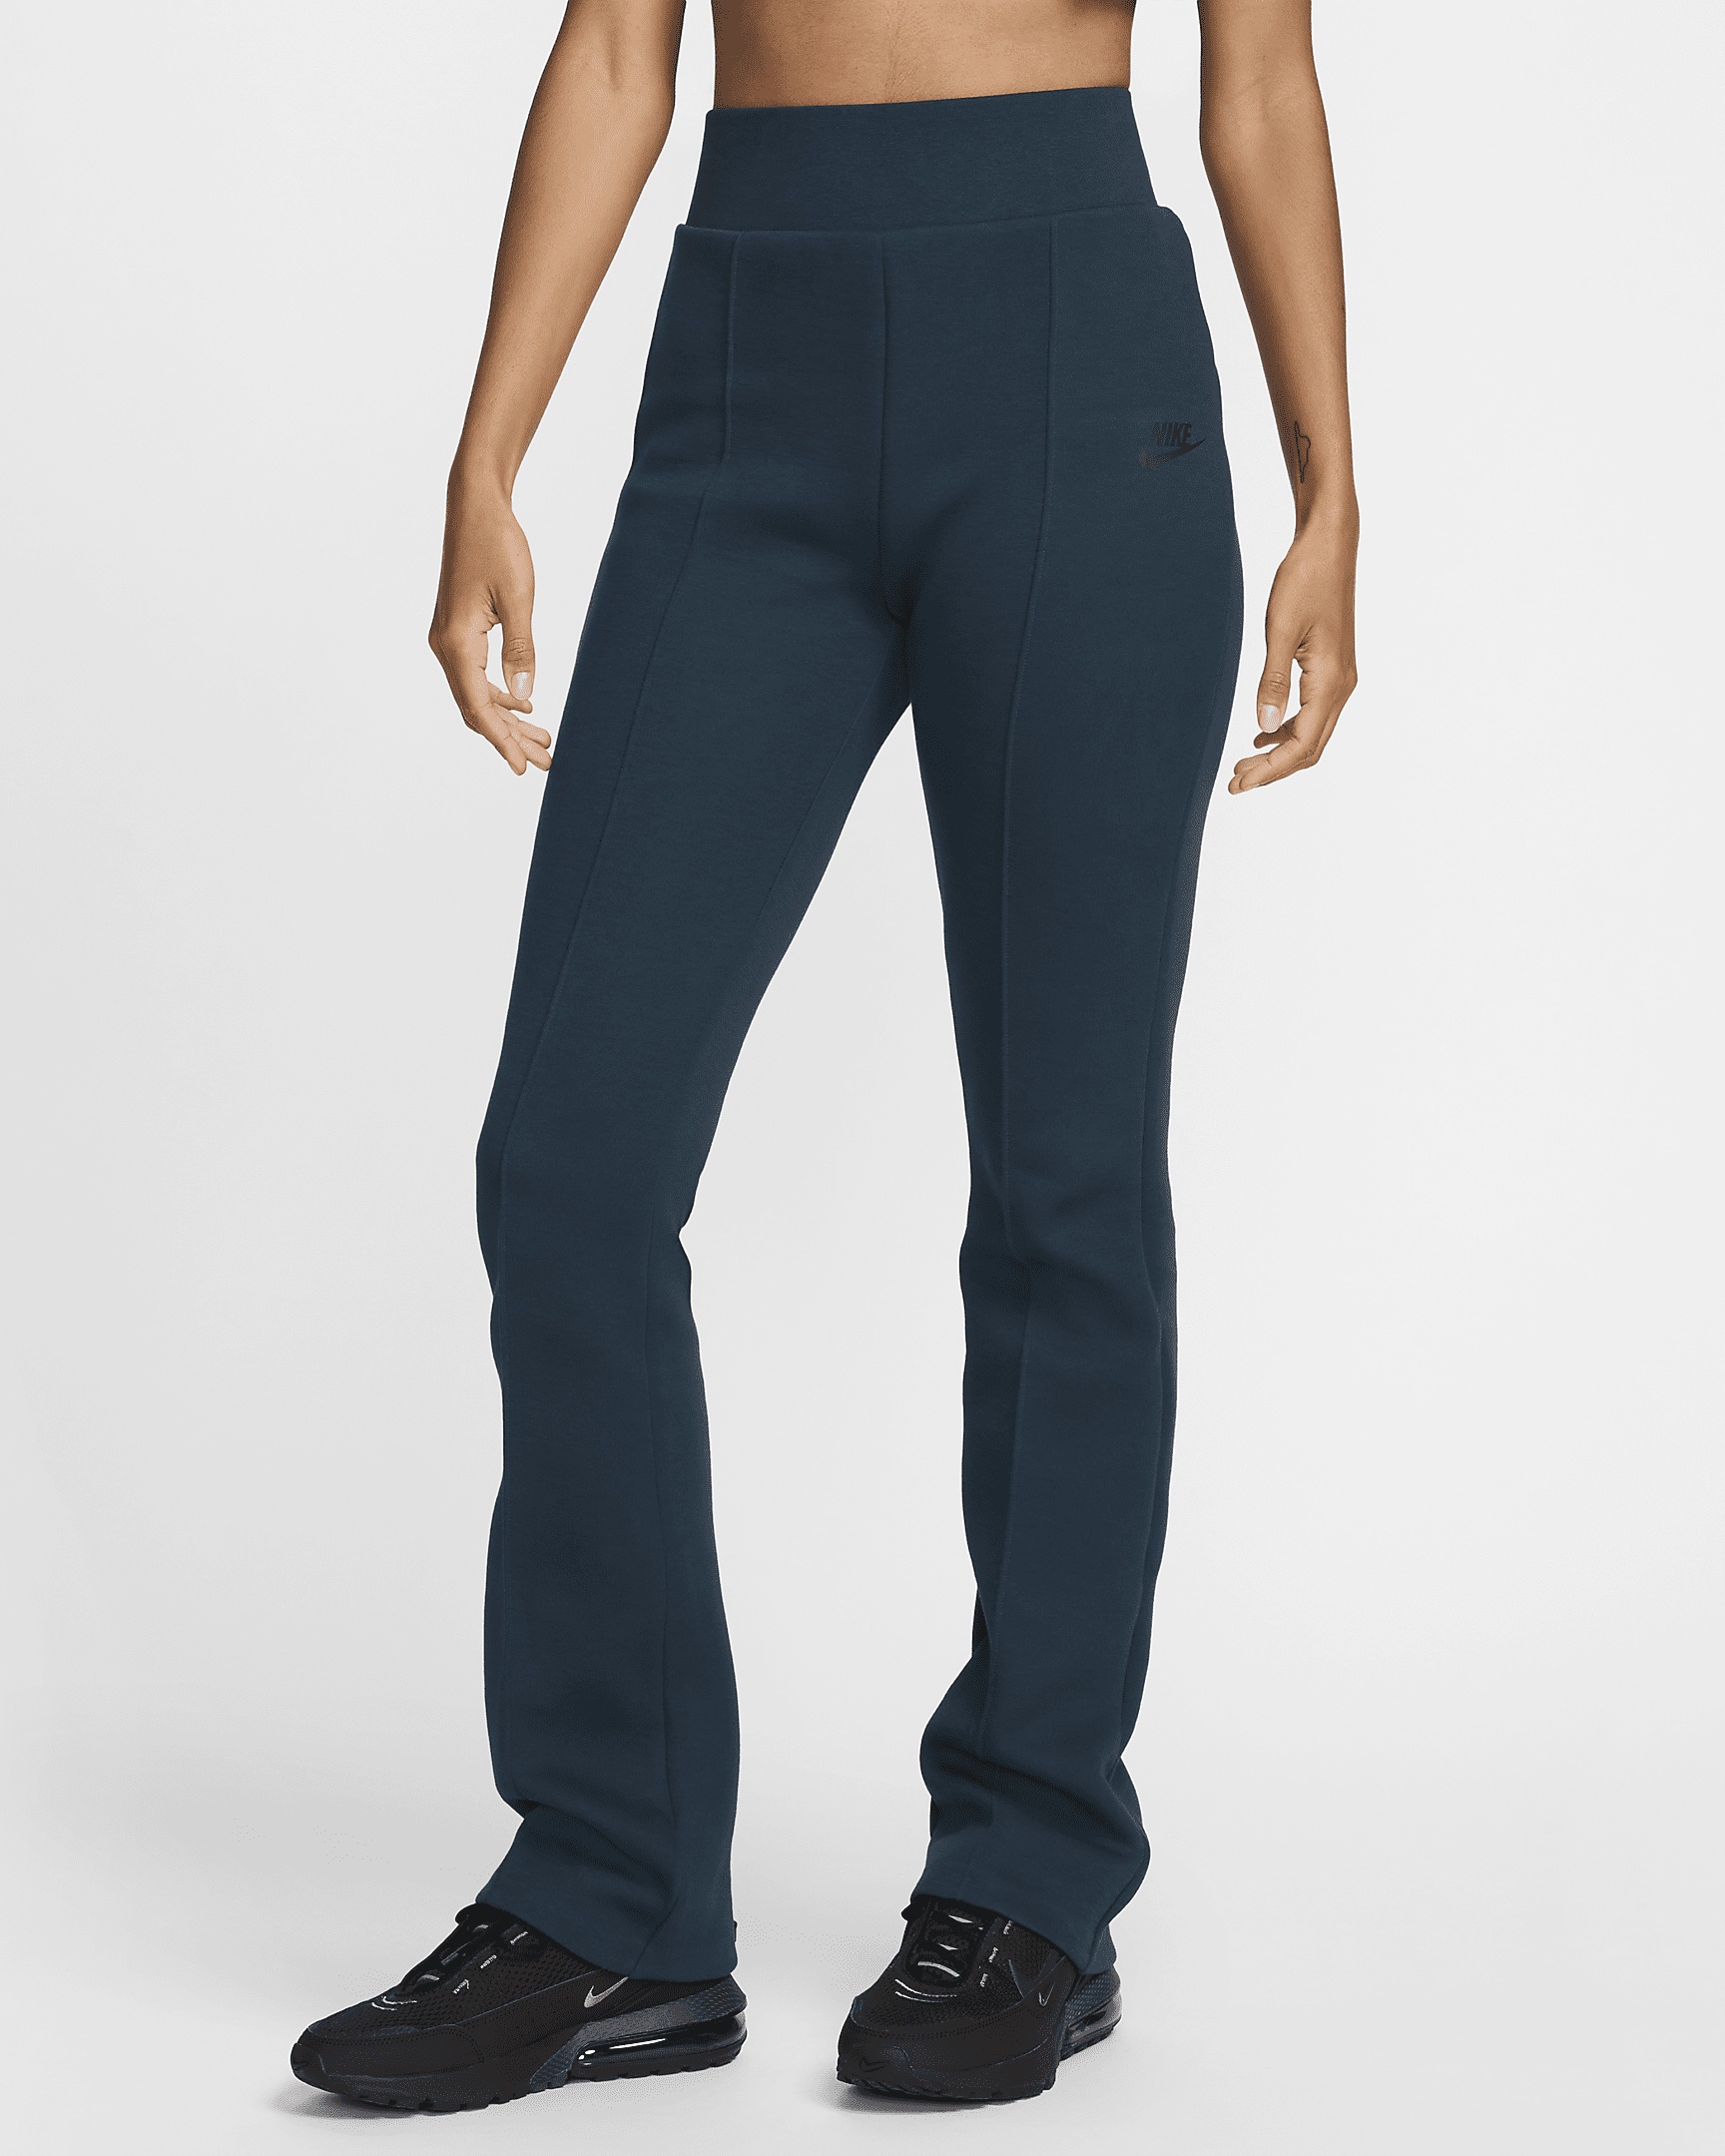 Nike Sportswear Tech Fleece Women's High-Waisted Slim Pants - 1